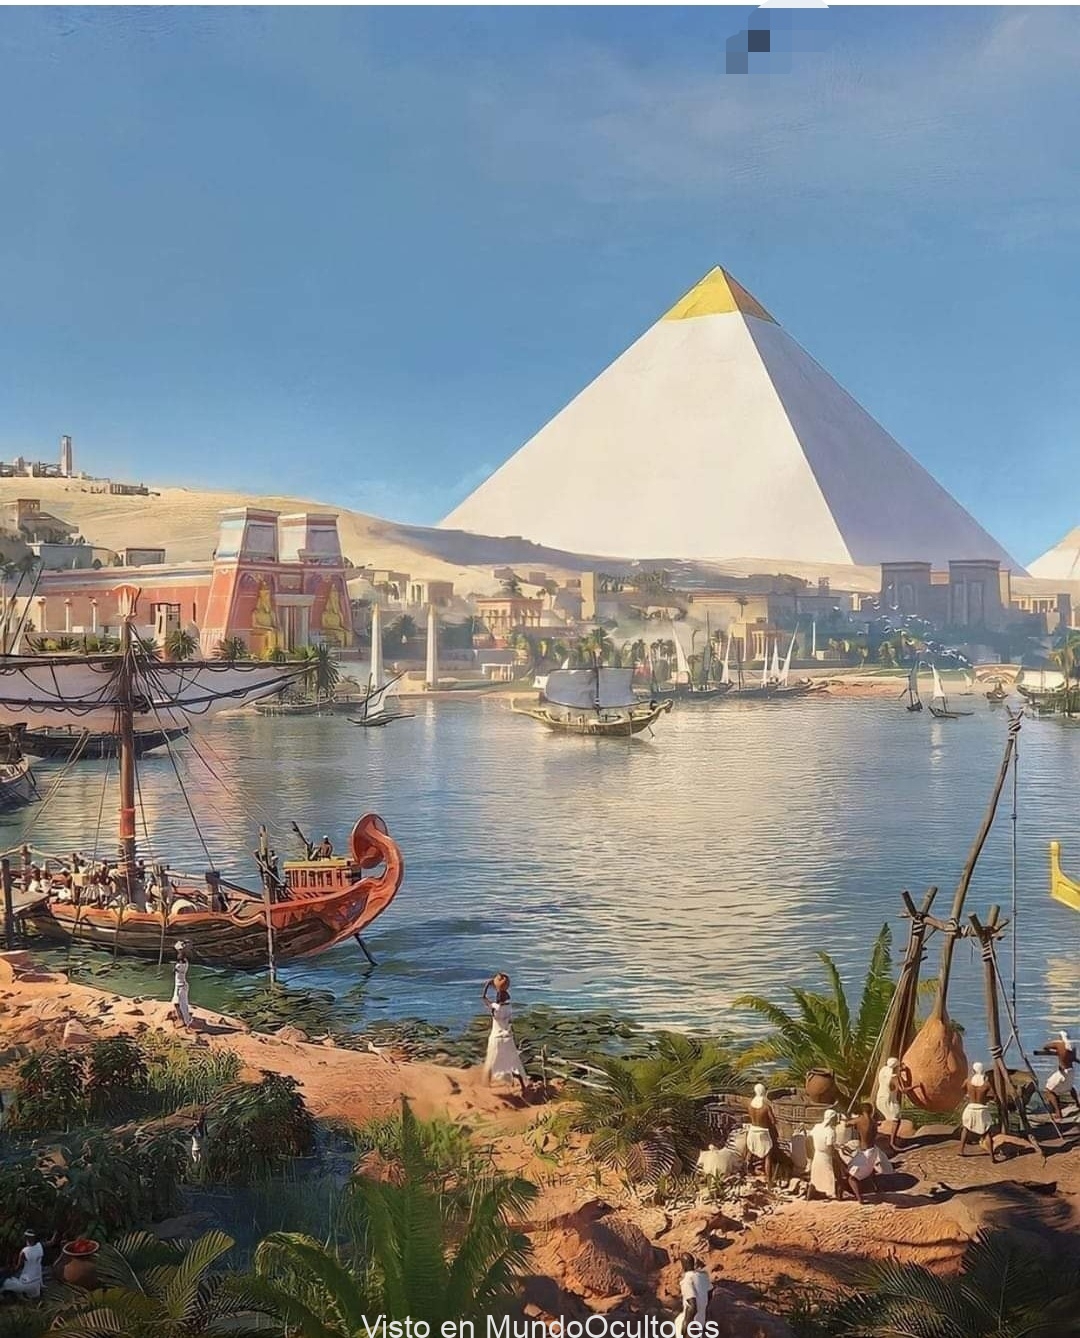 Hace unos 4.600 años retratando la vida alrededor de las pirámides.